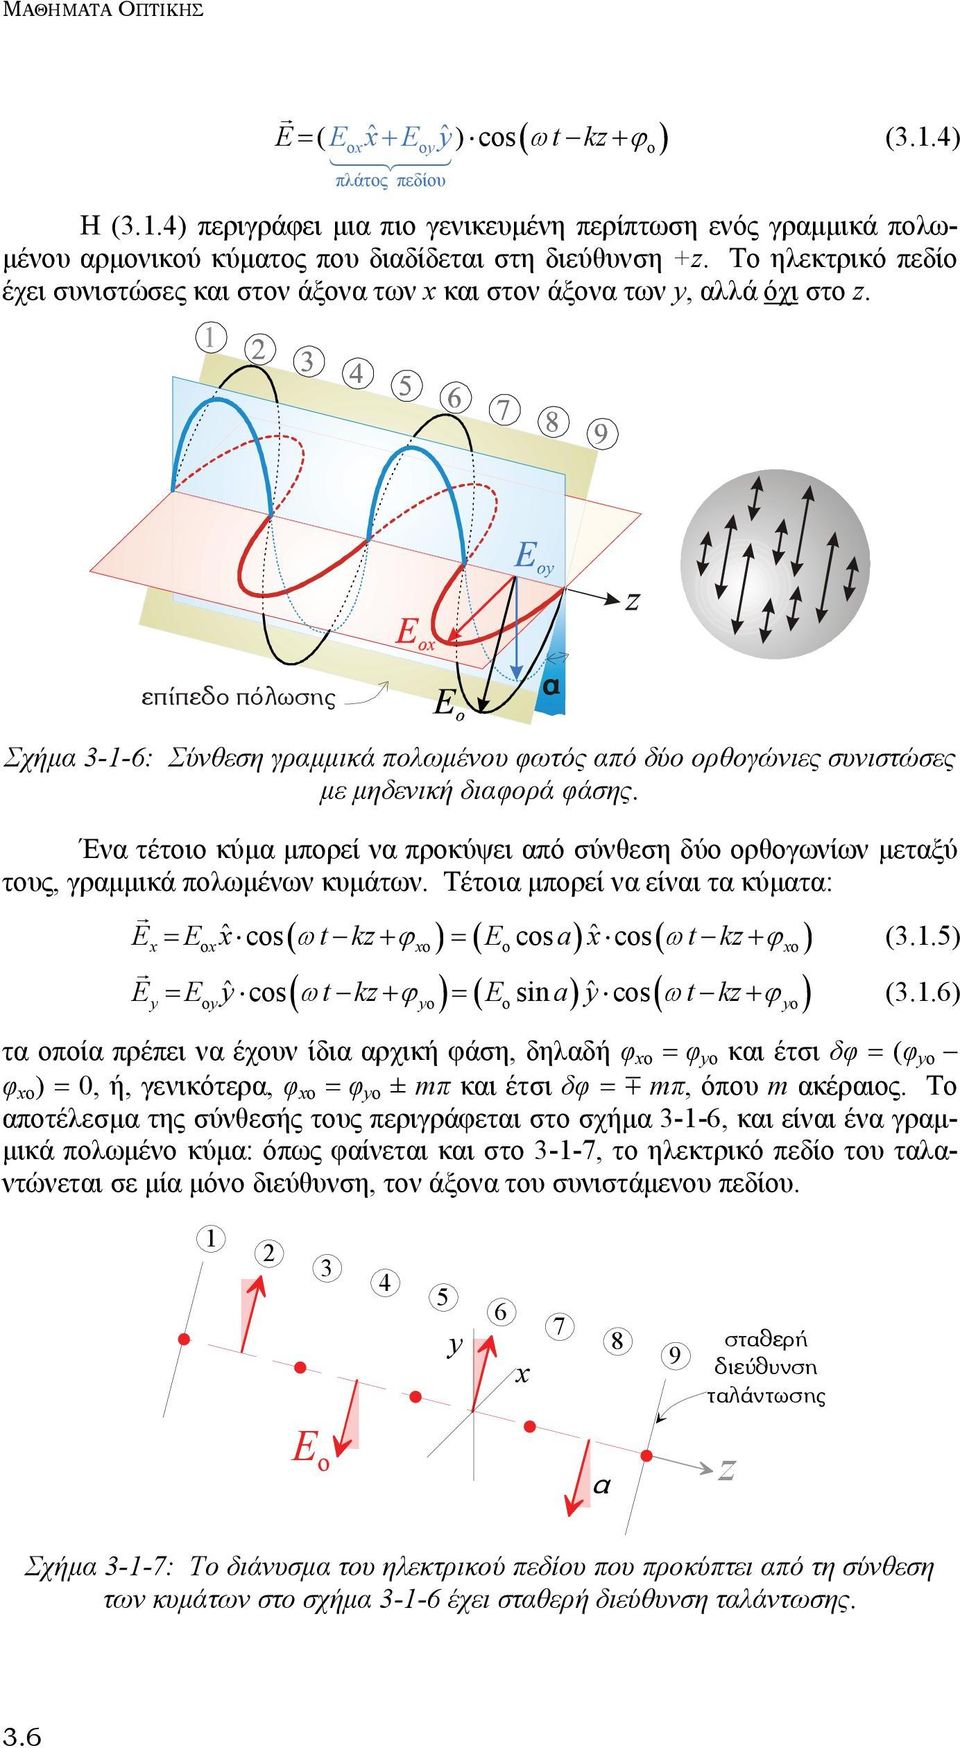 åðßðåäï ðüëùóçò á Σχήμα 3-1-6: Σύνθεση γραμμικά πολωμένου φωτός από δύο ορθογώνιες συνιστώσες με μηδενική διαφορά φάσης.